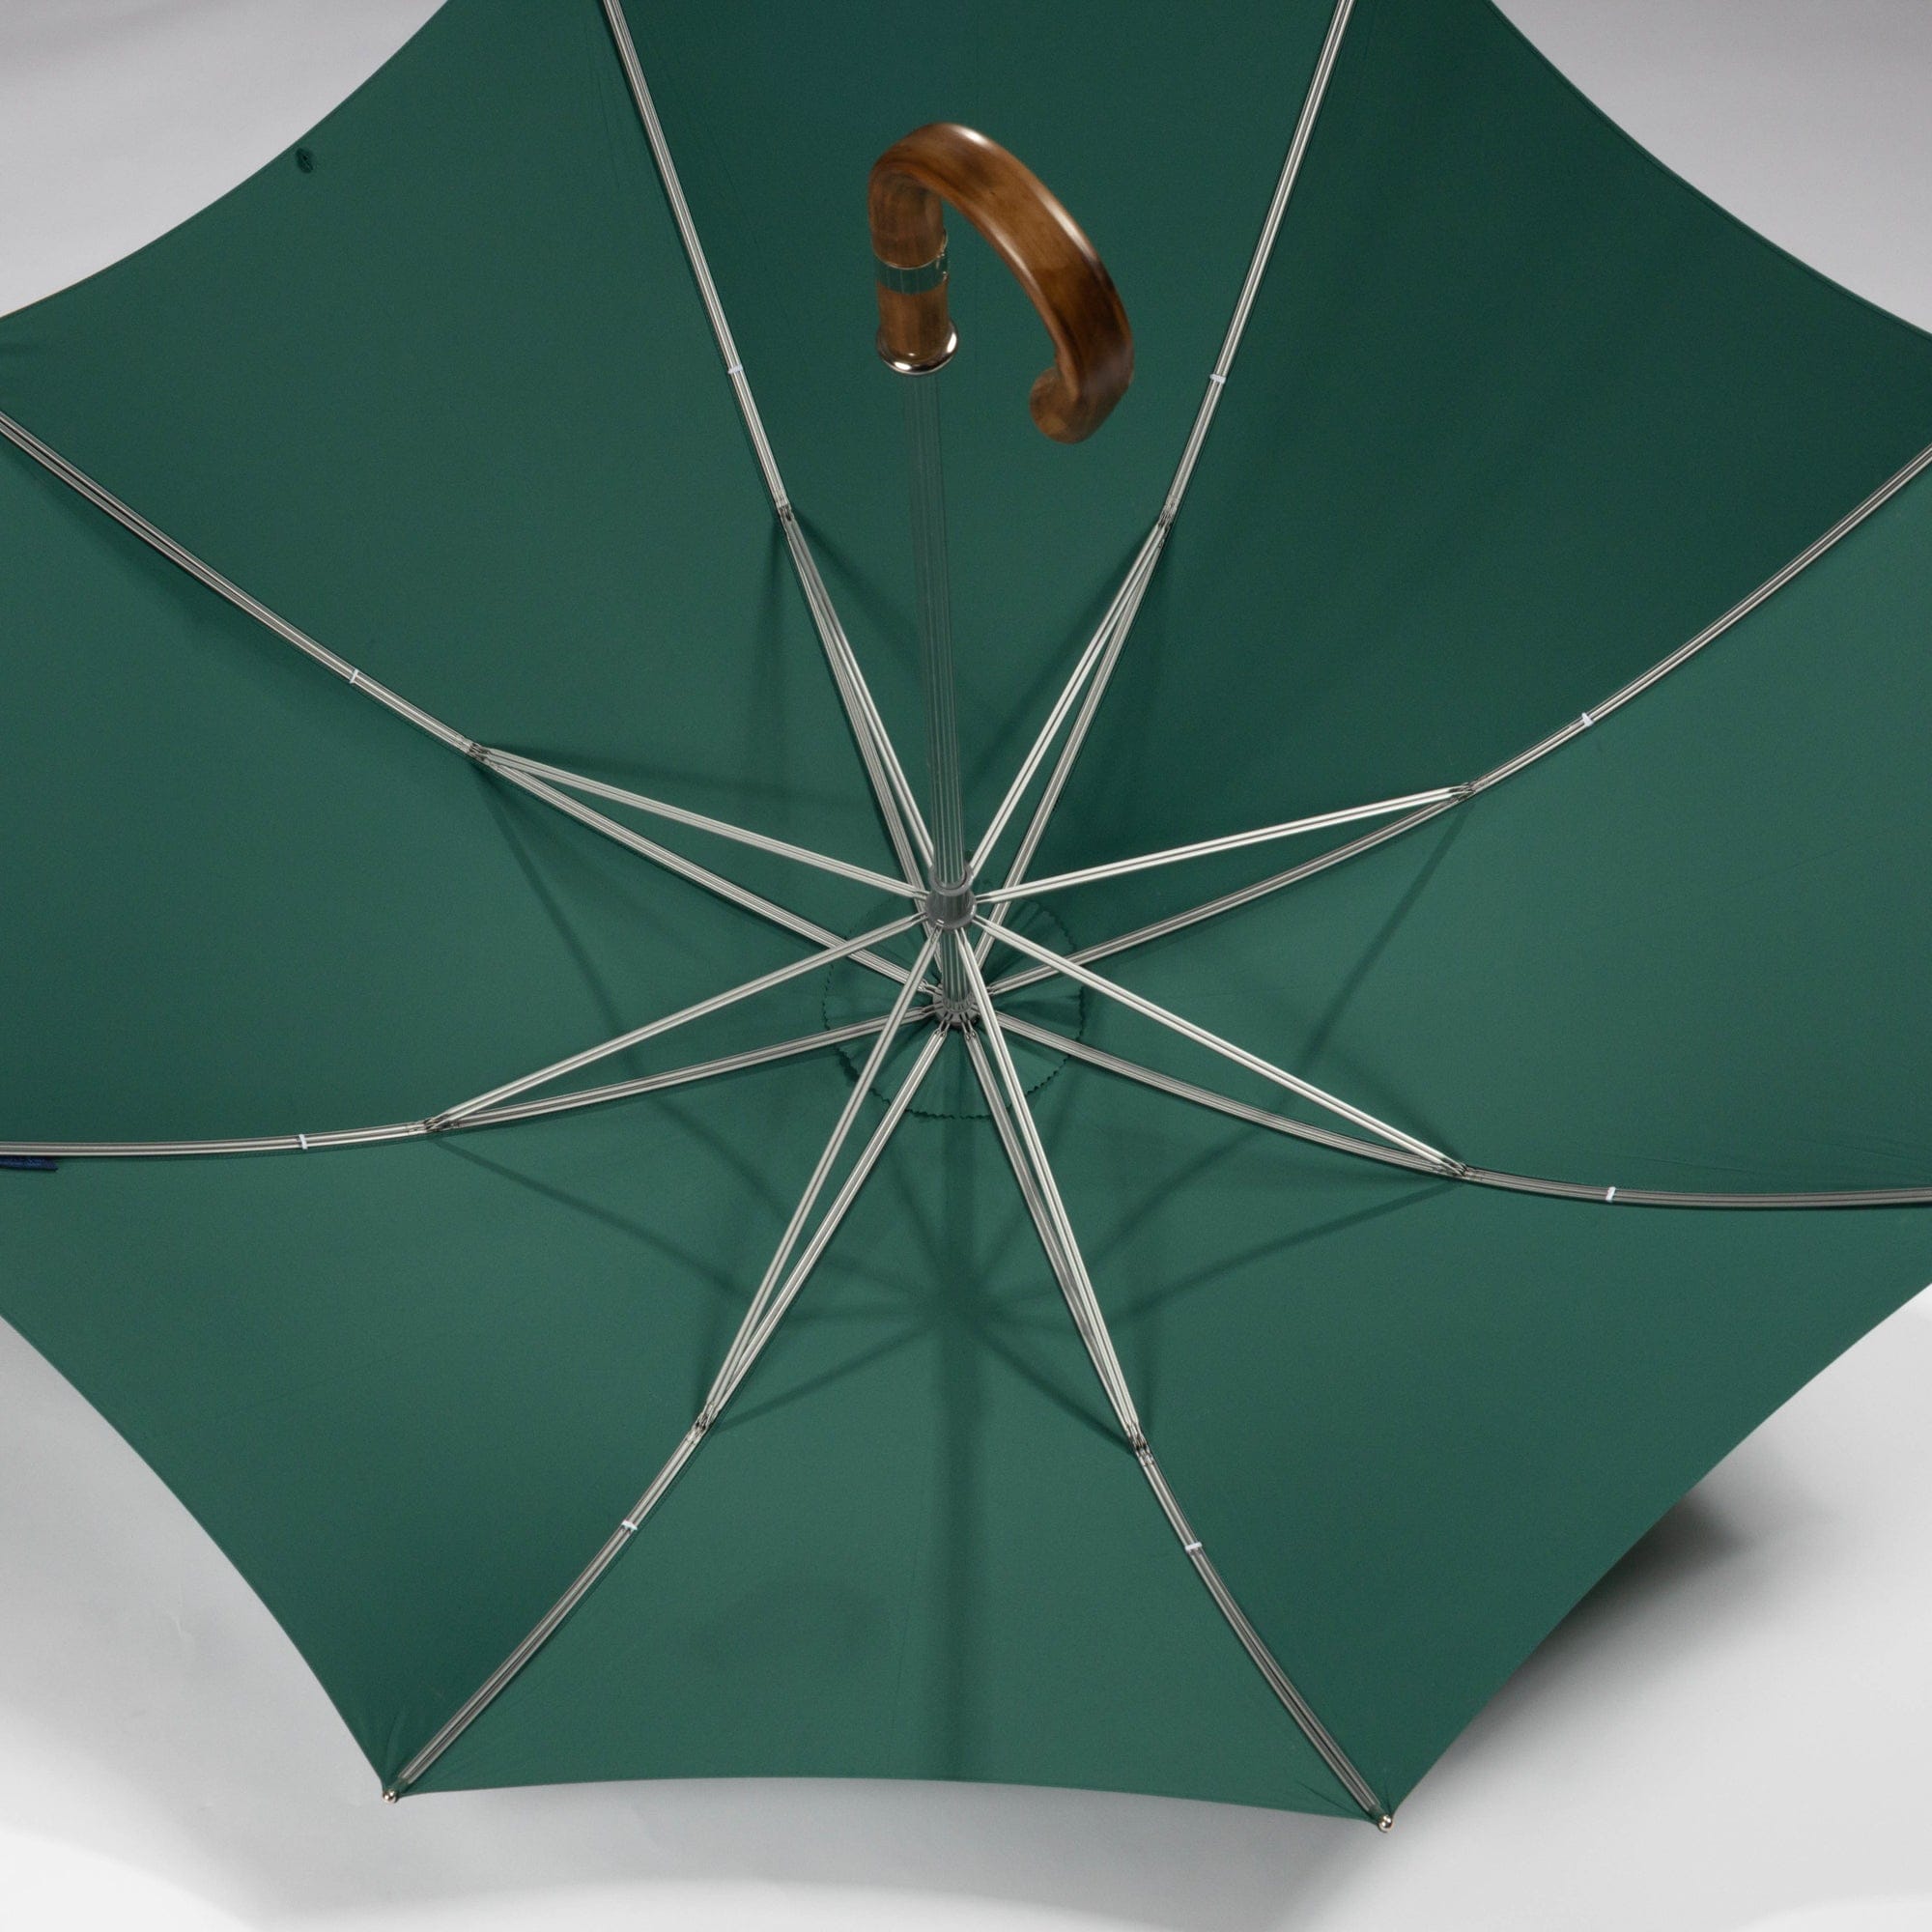 Teal Golf Umbrella